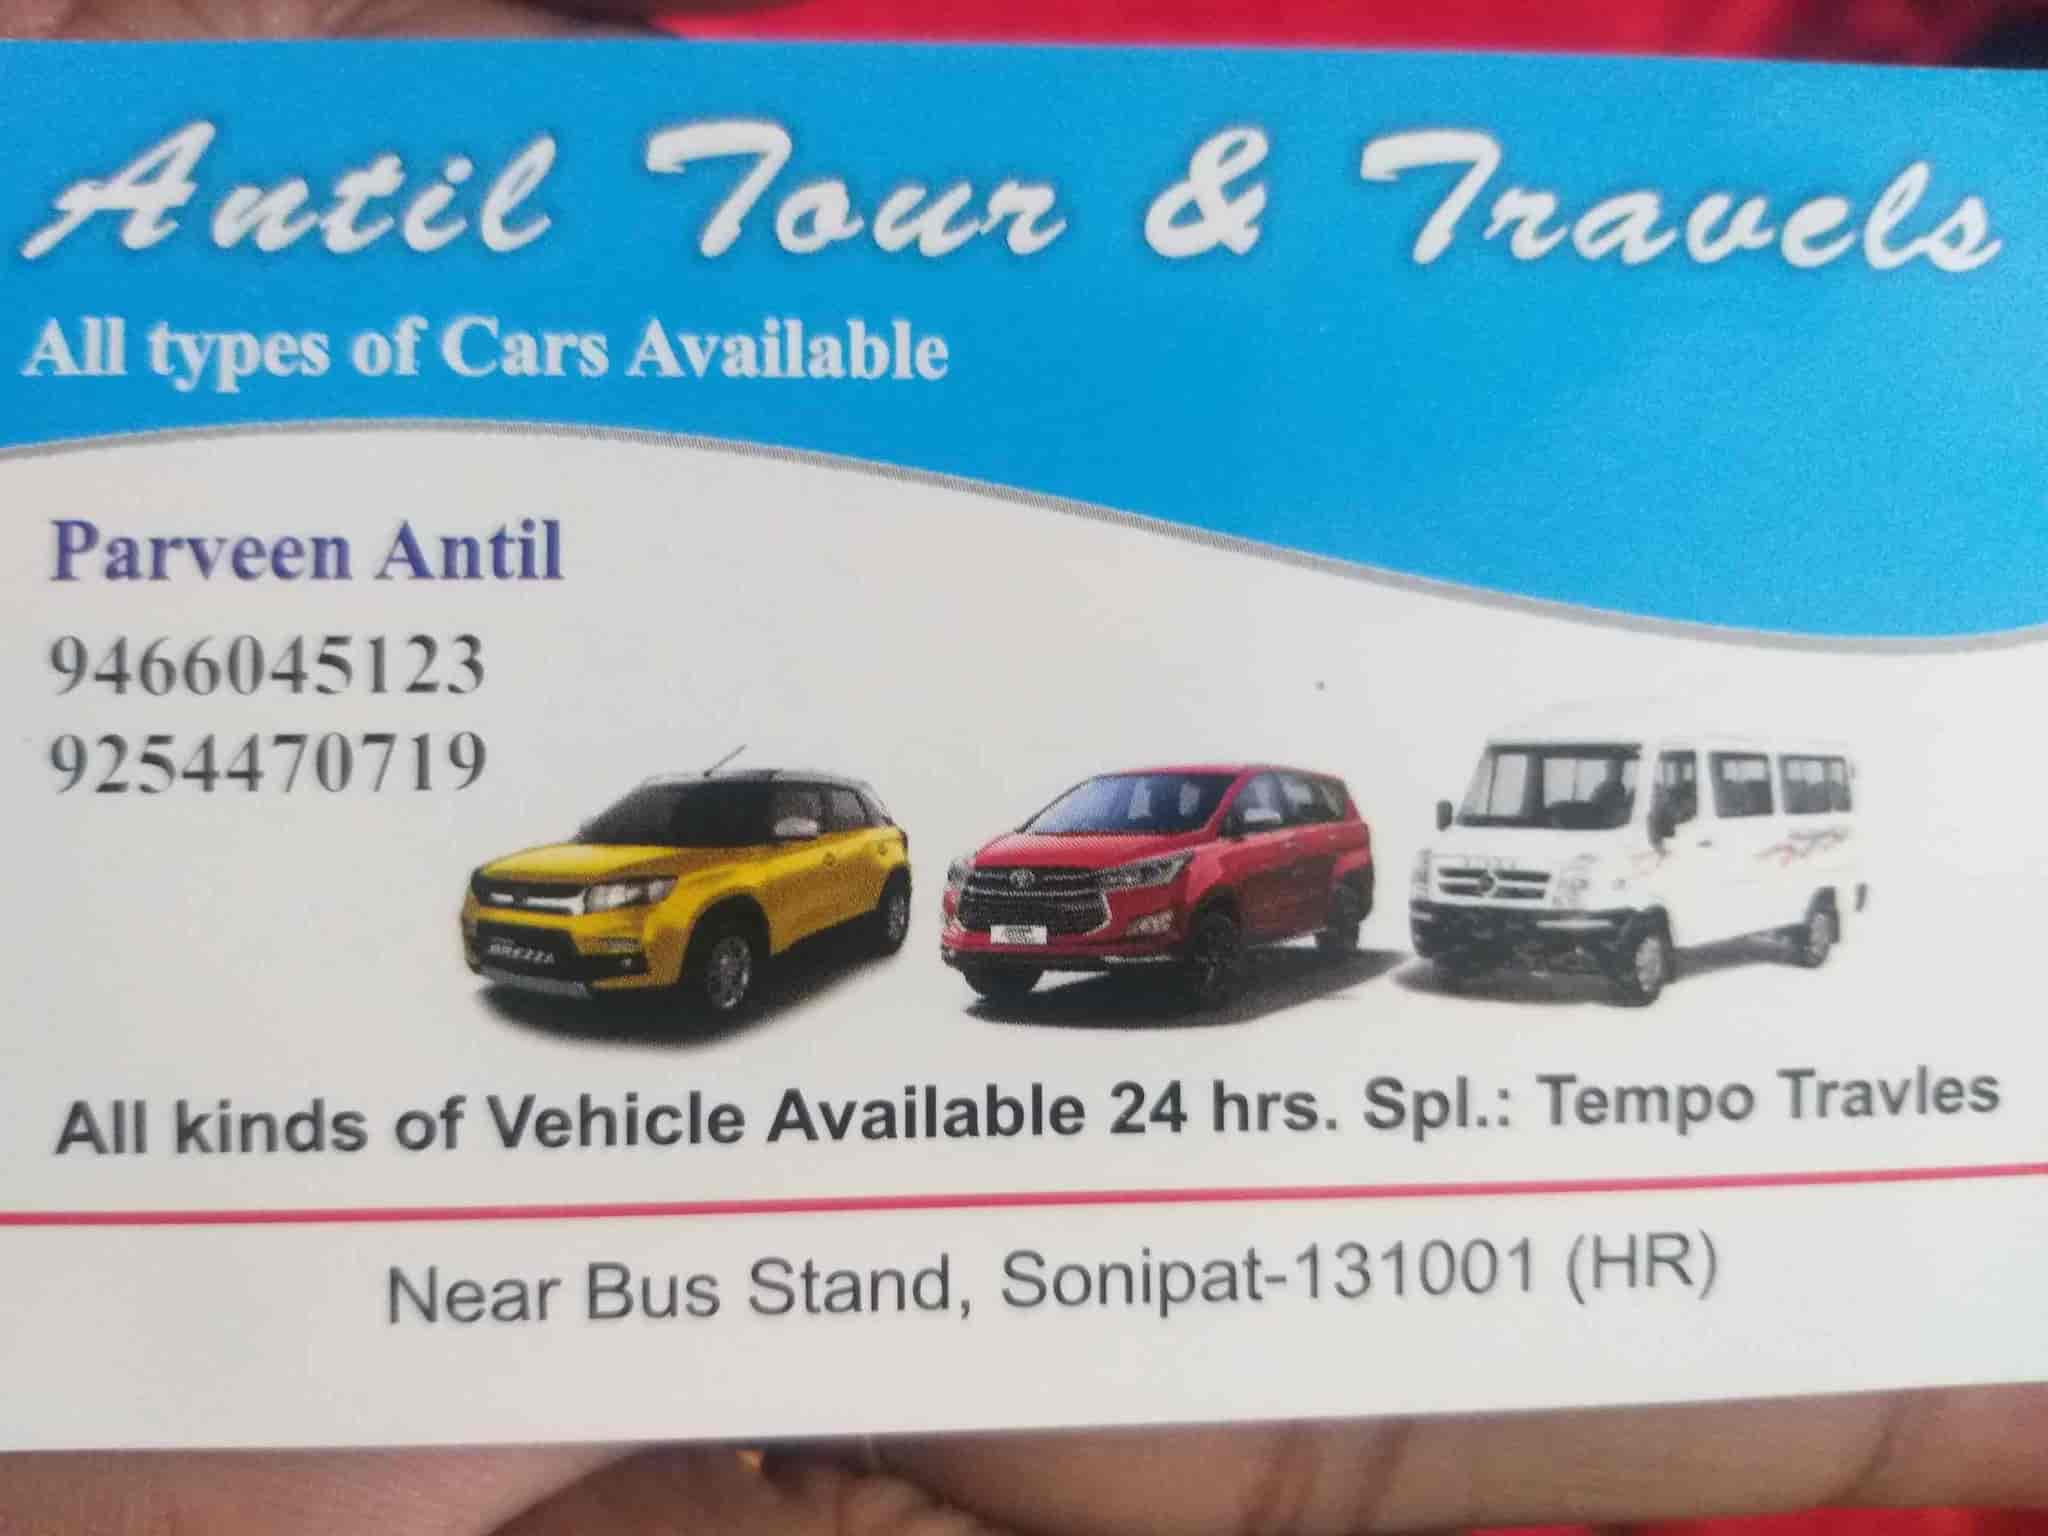 Antil Tour Travels Sonipat Ho Car Rental In Sonepat Justdial